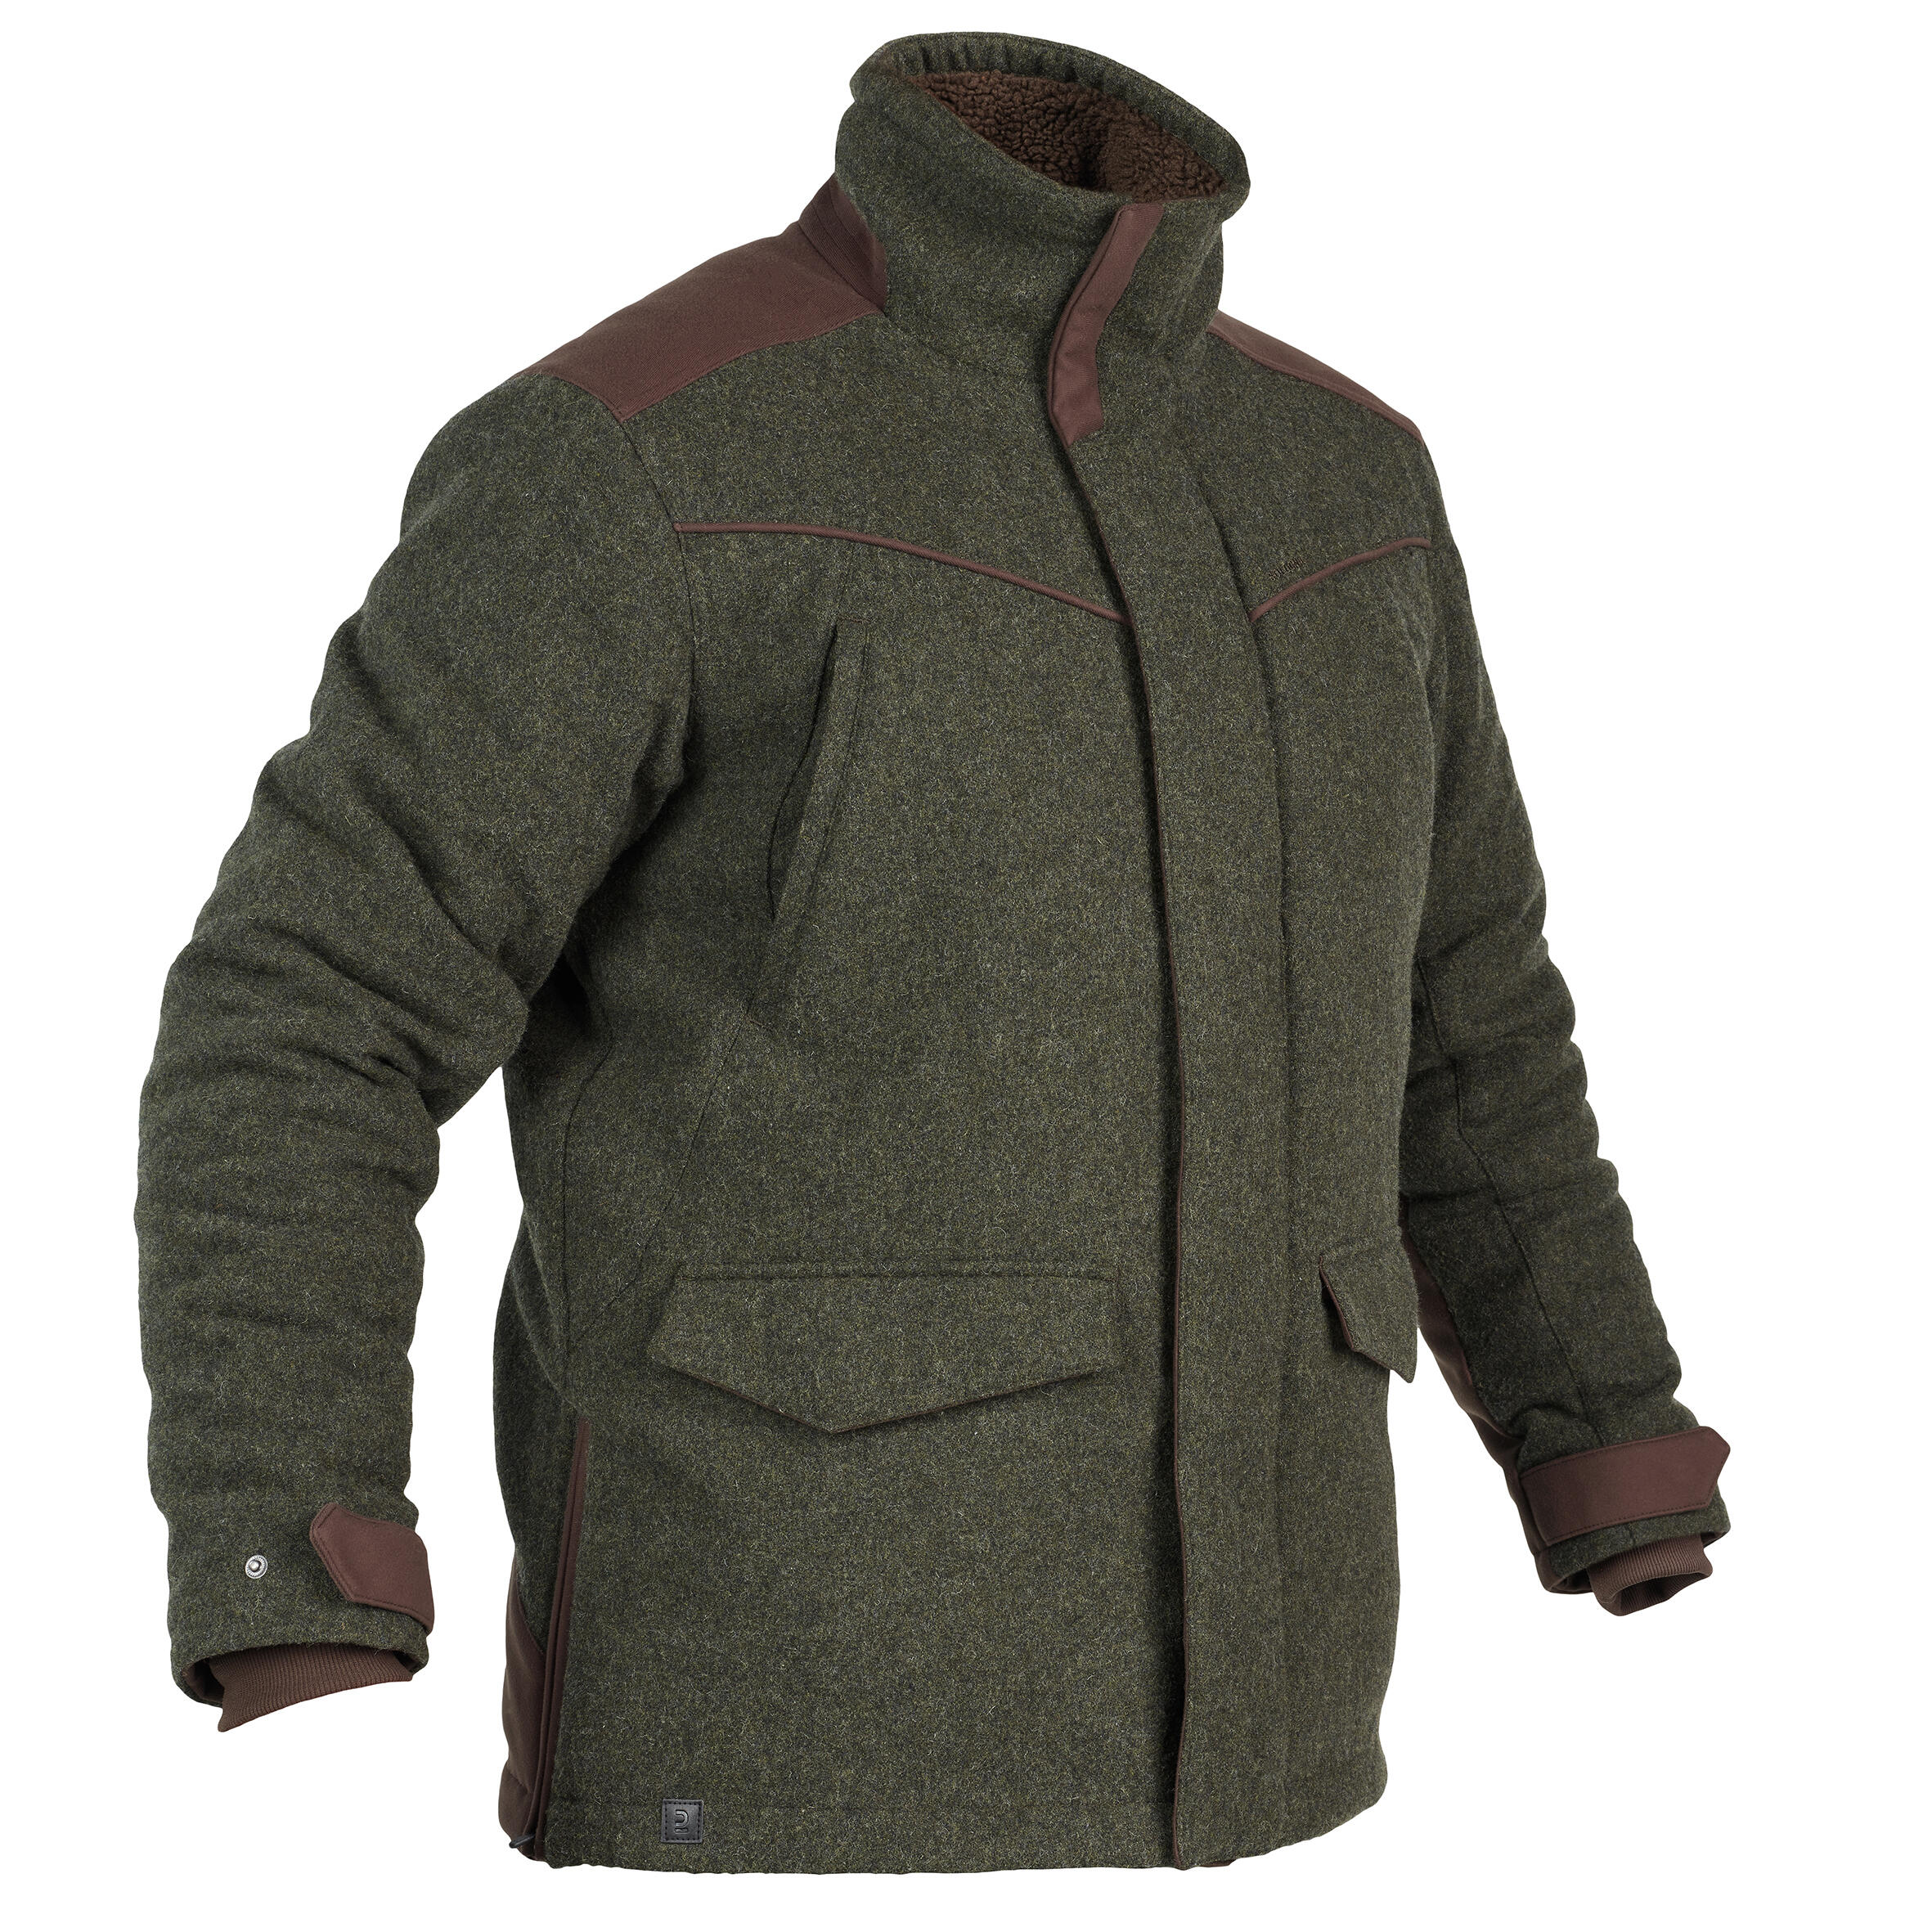 Jachetă 900 din lână călduroasă verde Bărbați La Oferta Online decathlon imagine La Oferta Online